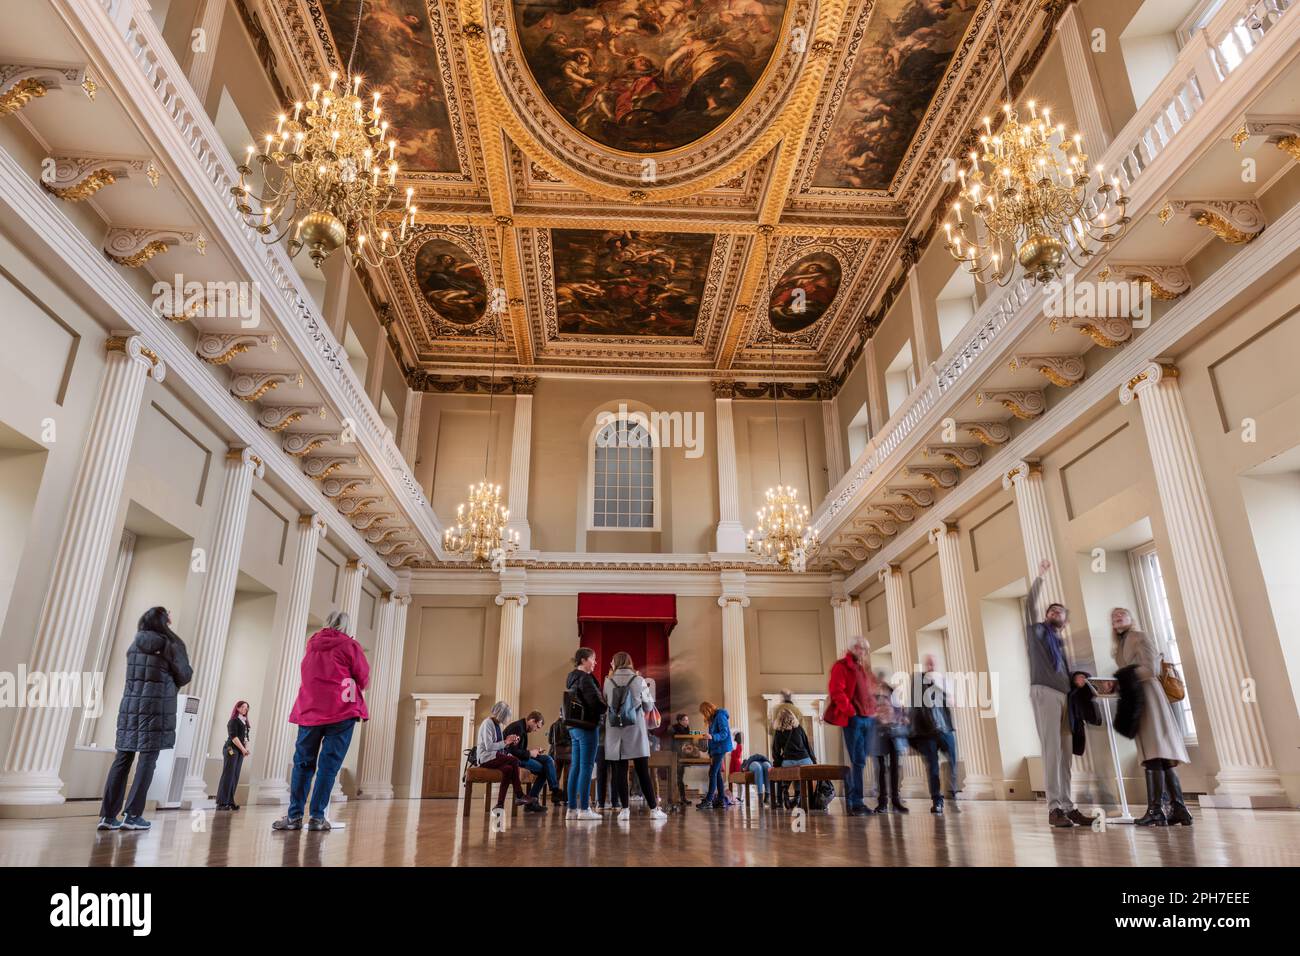 Die wunderschöne Decke des Banketthauses ist vom flämischen Künstler Sir Peter Paul Rubens. Die drei wichtigsten Leinwände zeigen die Vereinigung der Kronen, Stockfoto